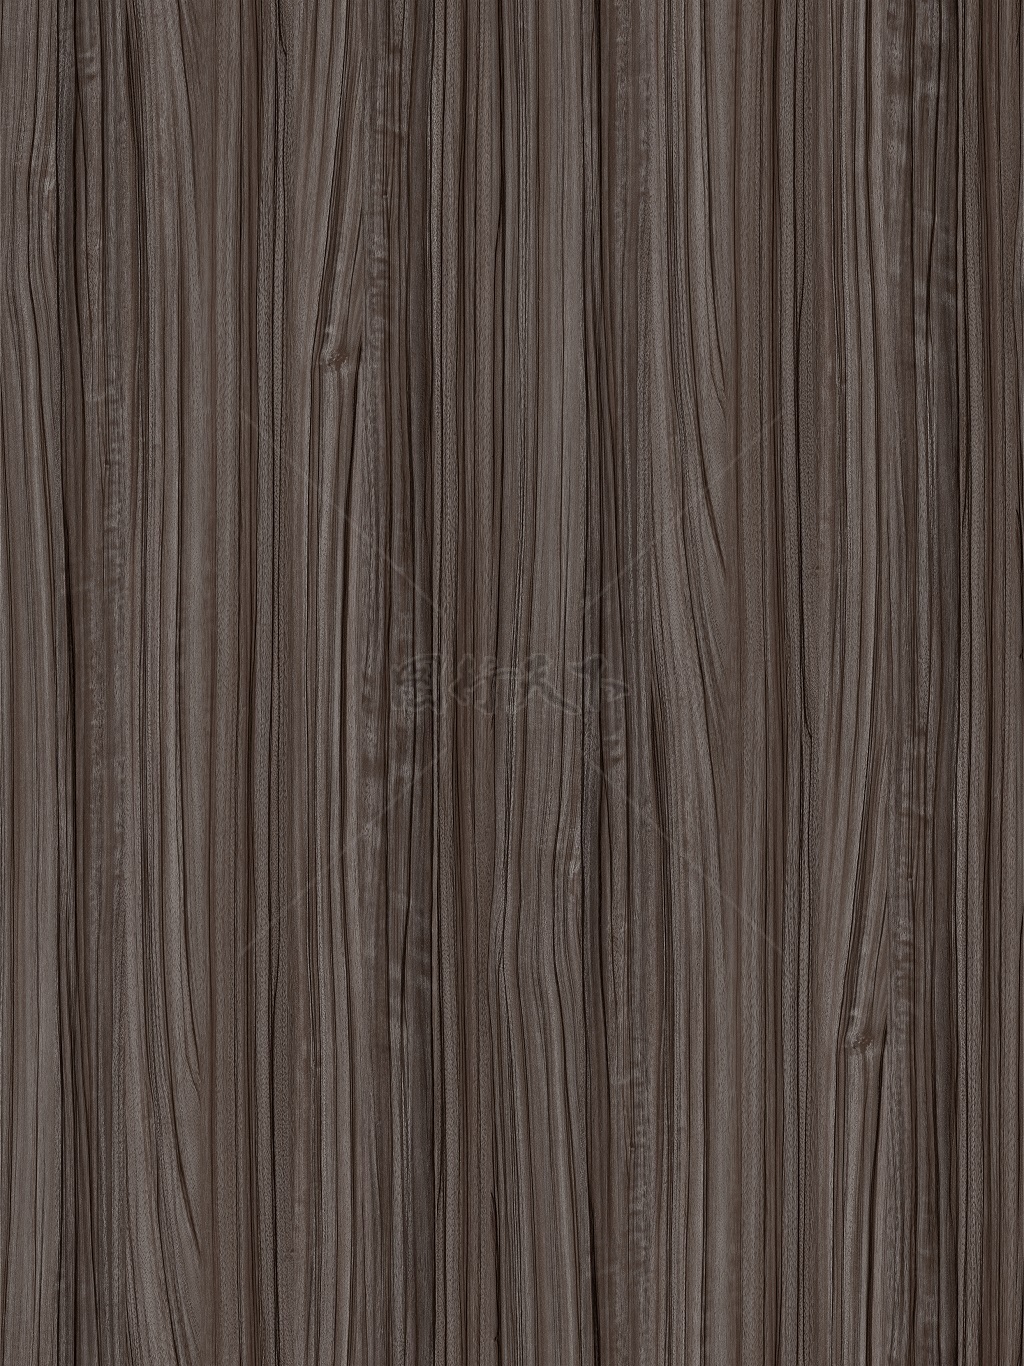 胡桃木木纹纹理背景图案贴图深棕色